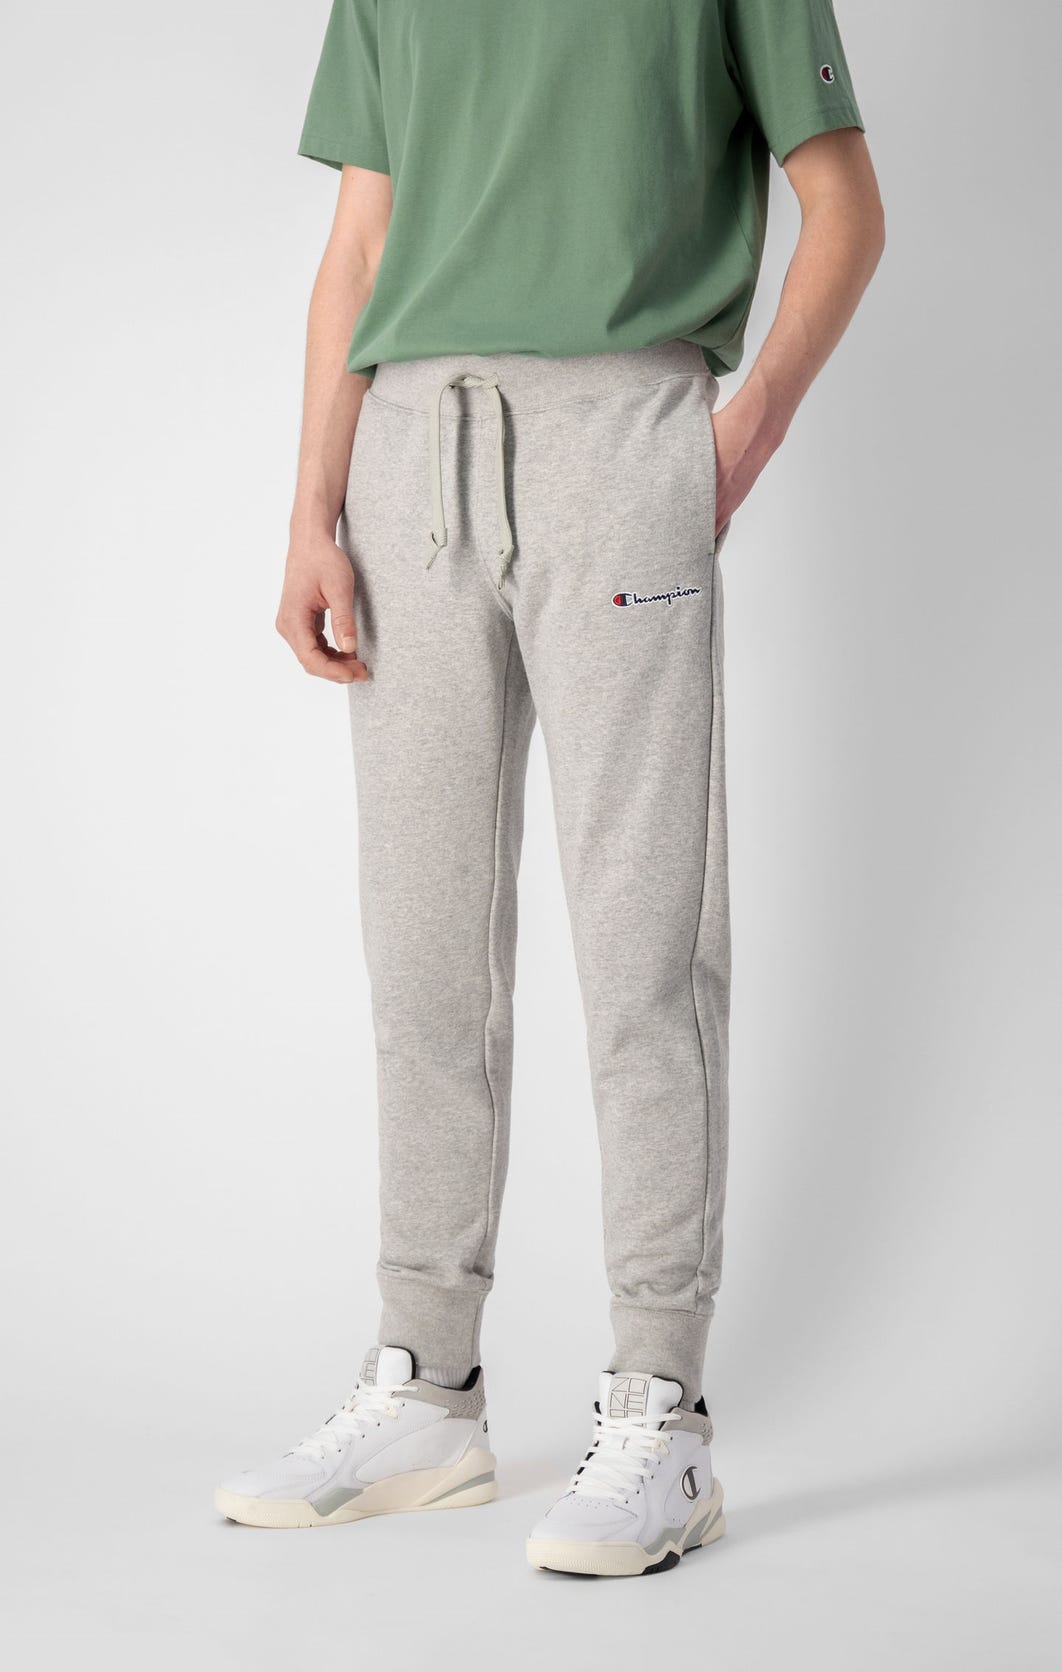 Buy Champion Rib Cuff Pants Light Grey - Scandinavian Fashion Store